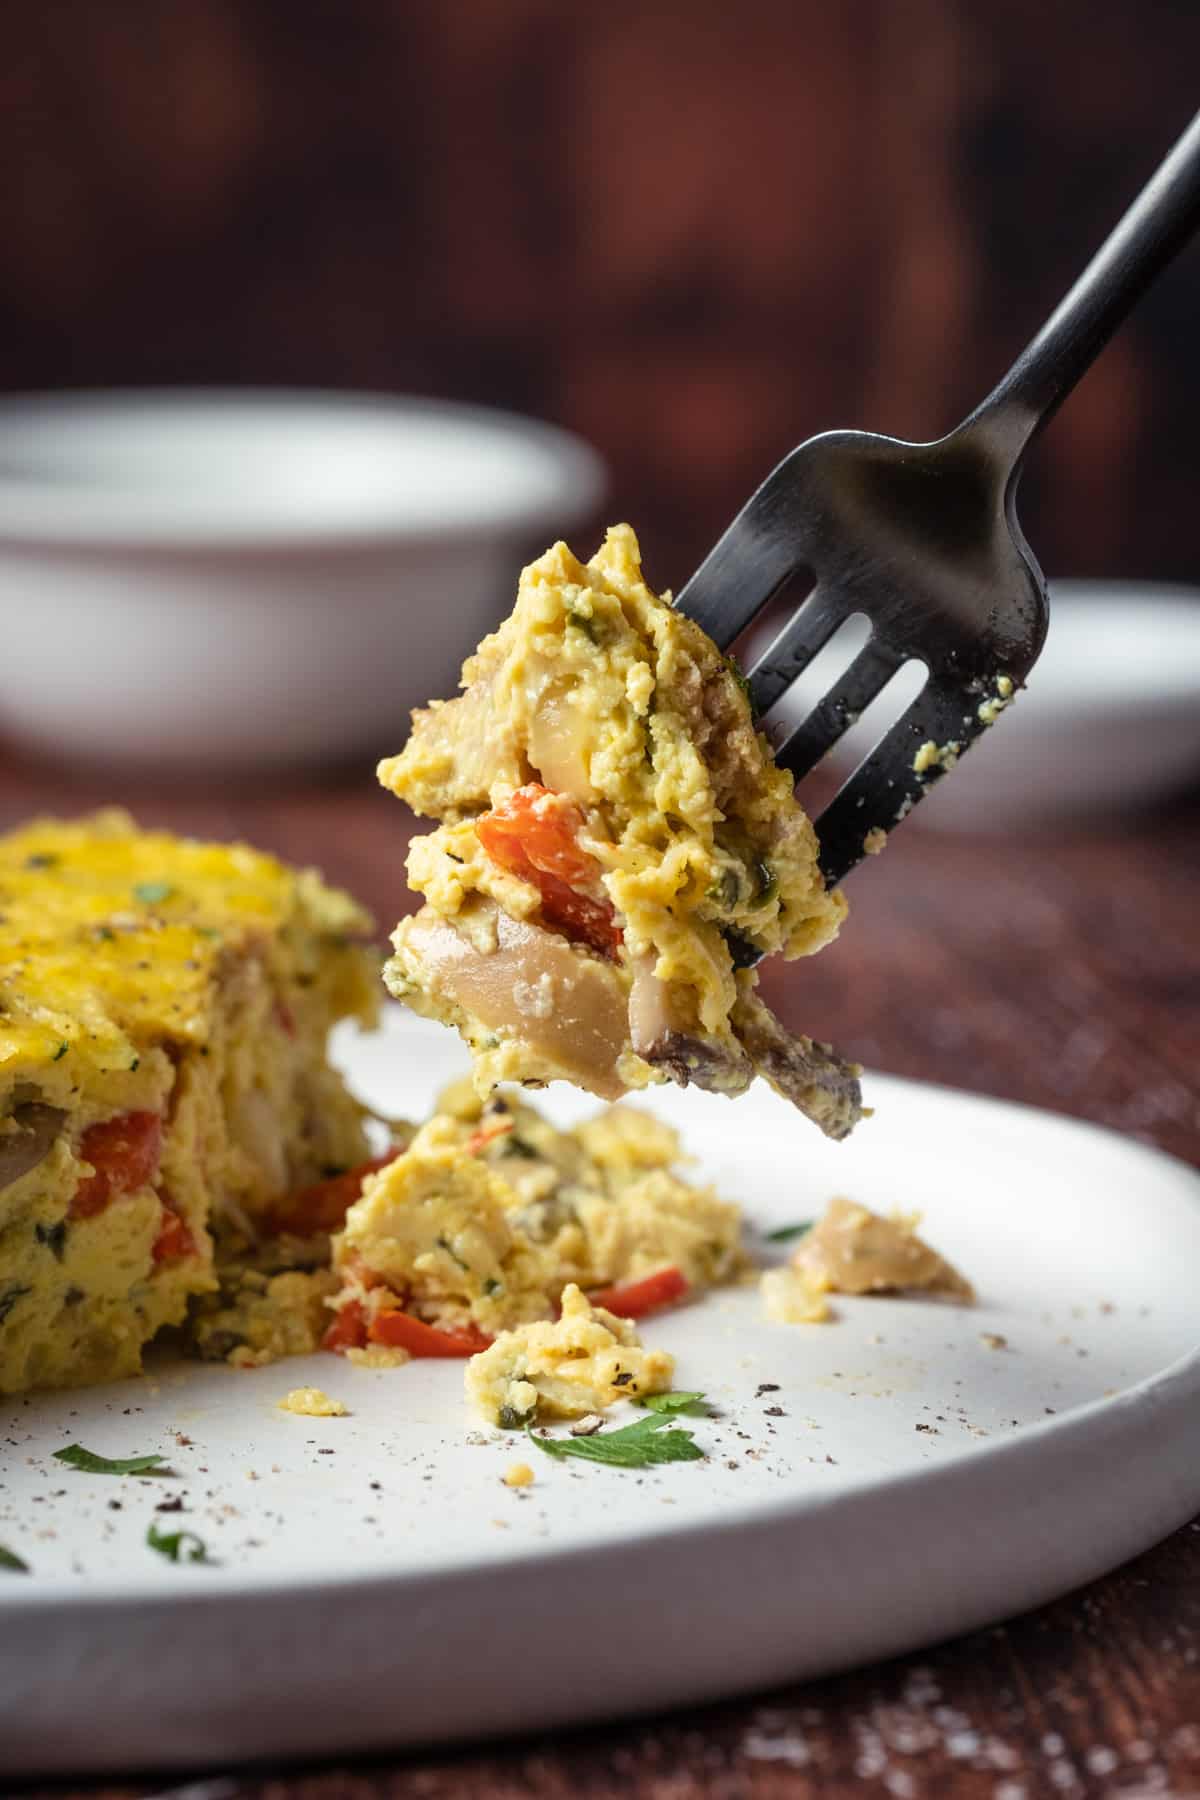 A bite of Vegan Breakfast Casserole on a black fork.